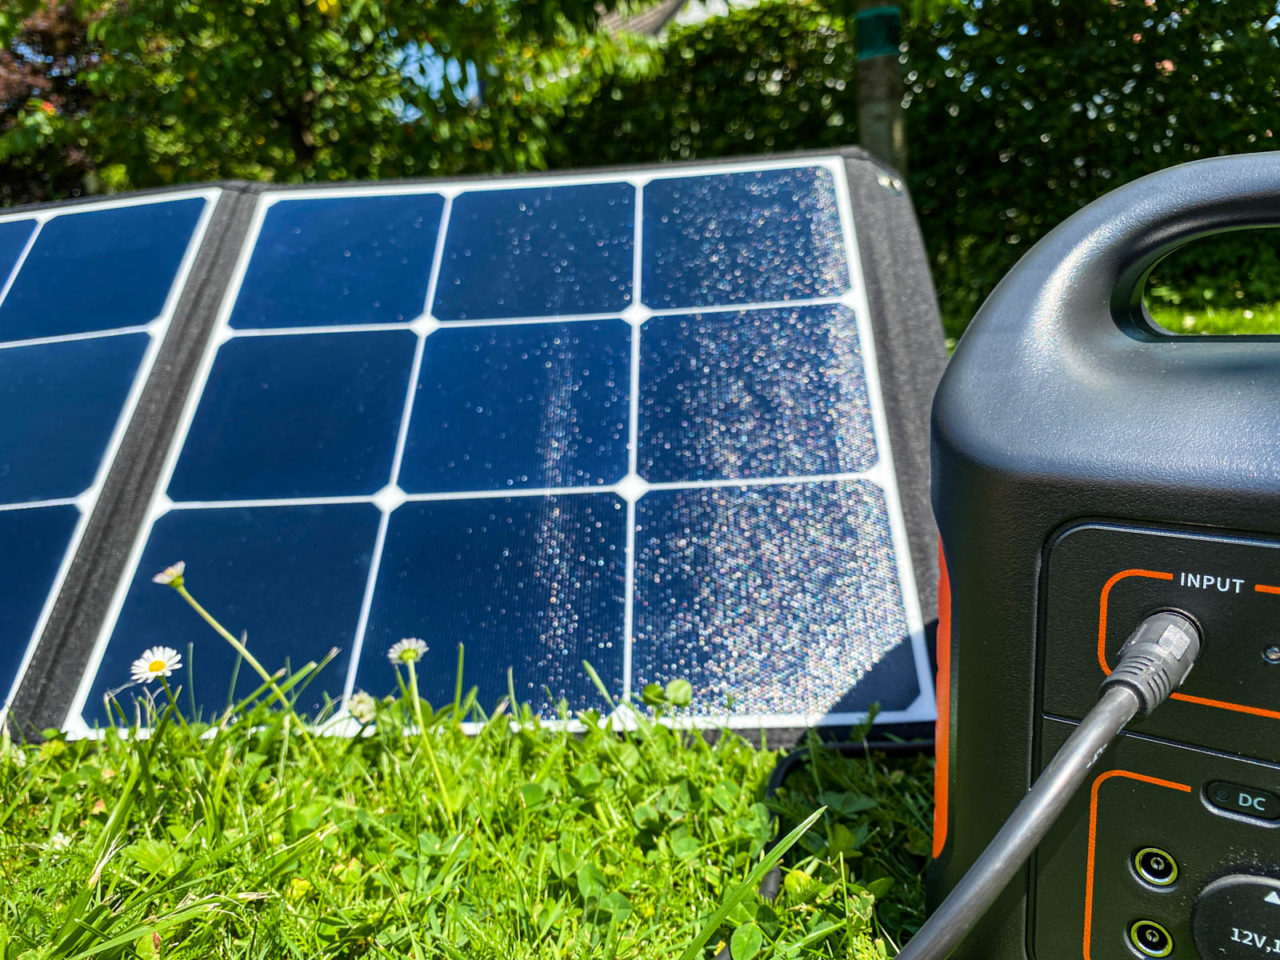 PowerOak Bluetti SP120 Solarpanel Test - Leistung in der Sonne, an Powerstation auf einer Wiese